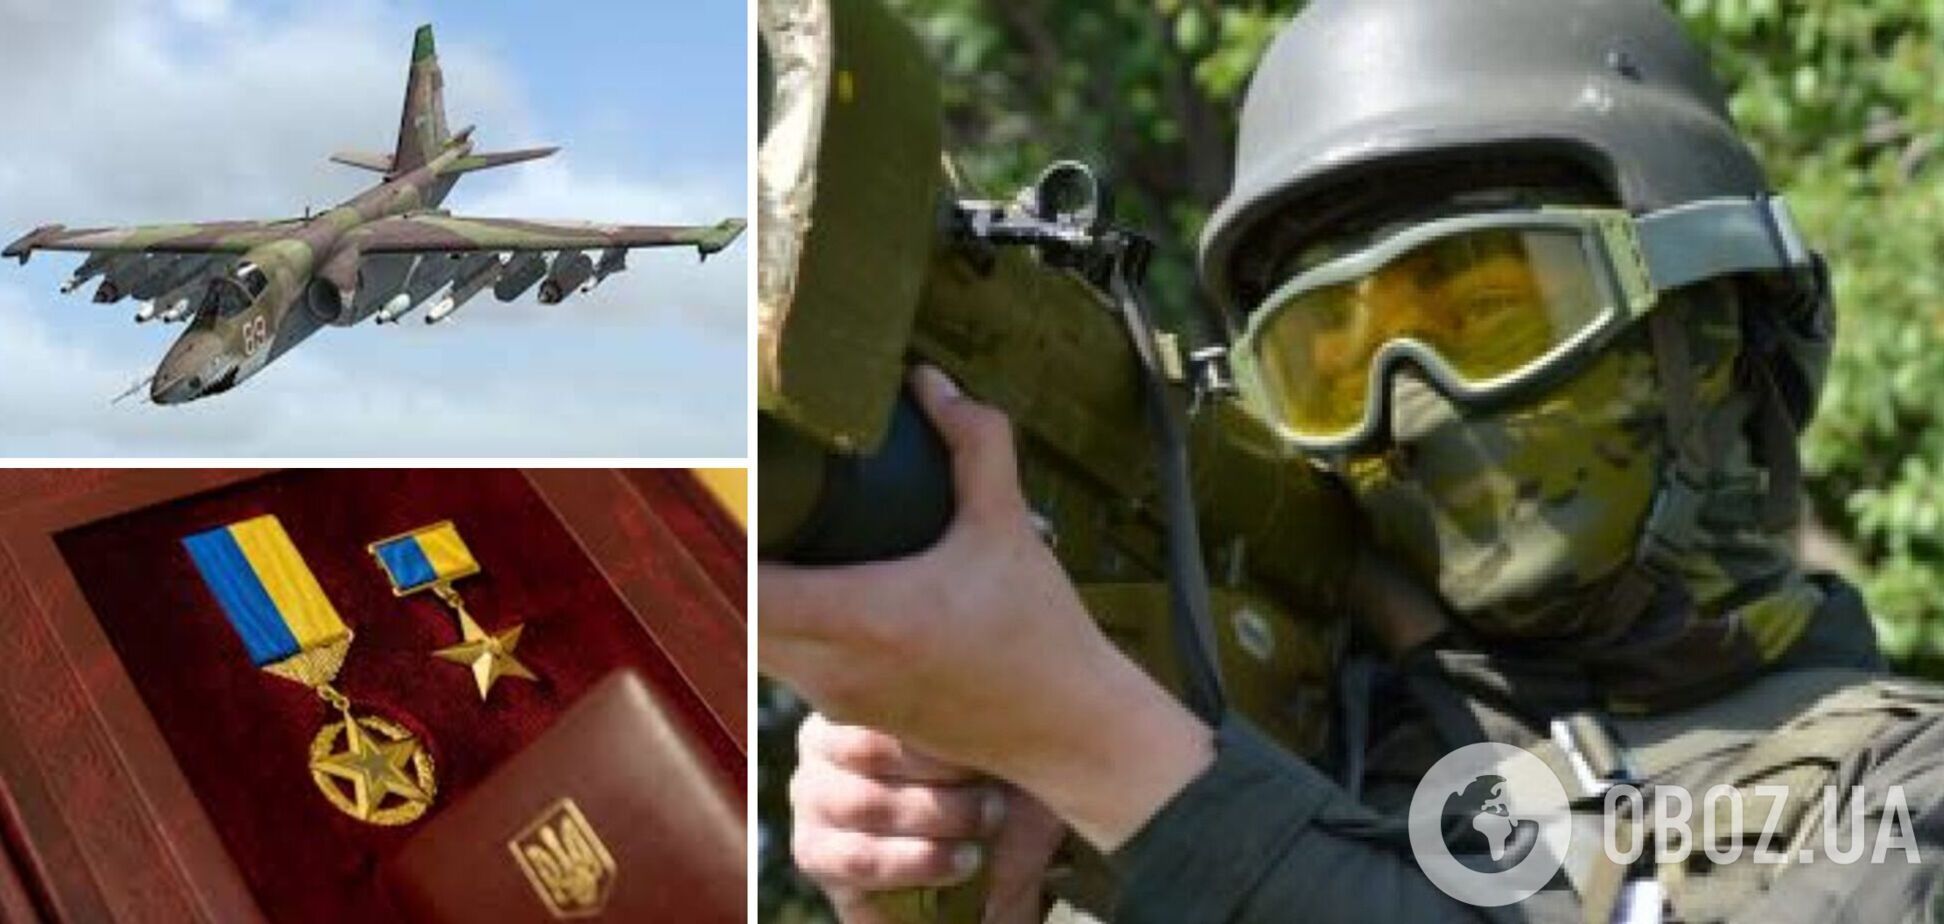 Нацгвардейцу, сбившему 6 самолетов и ракету, присвоили звание Героя Украины